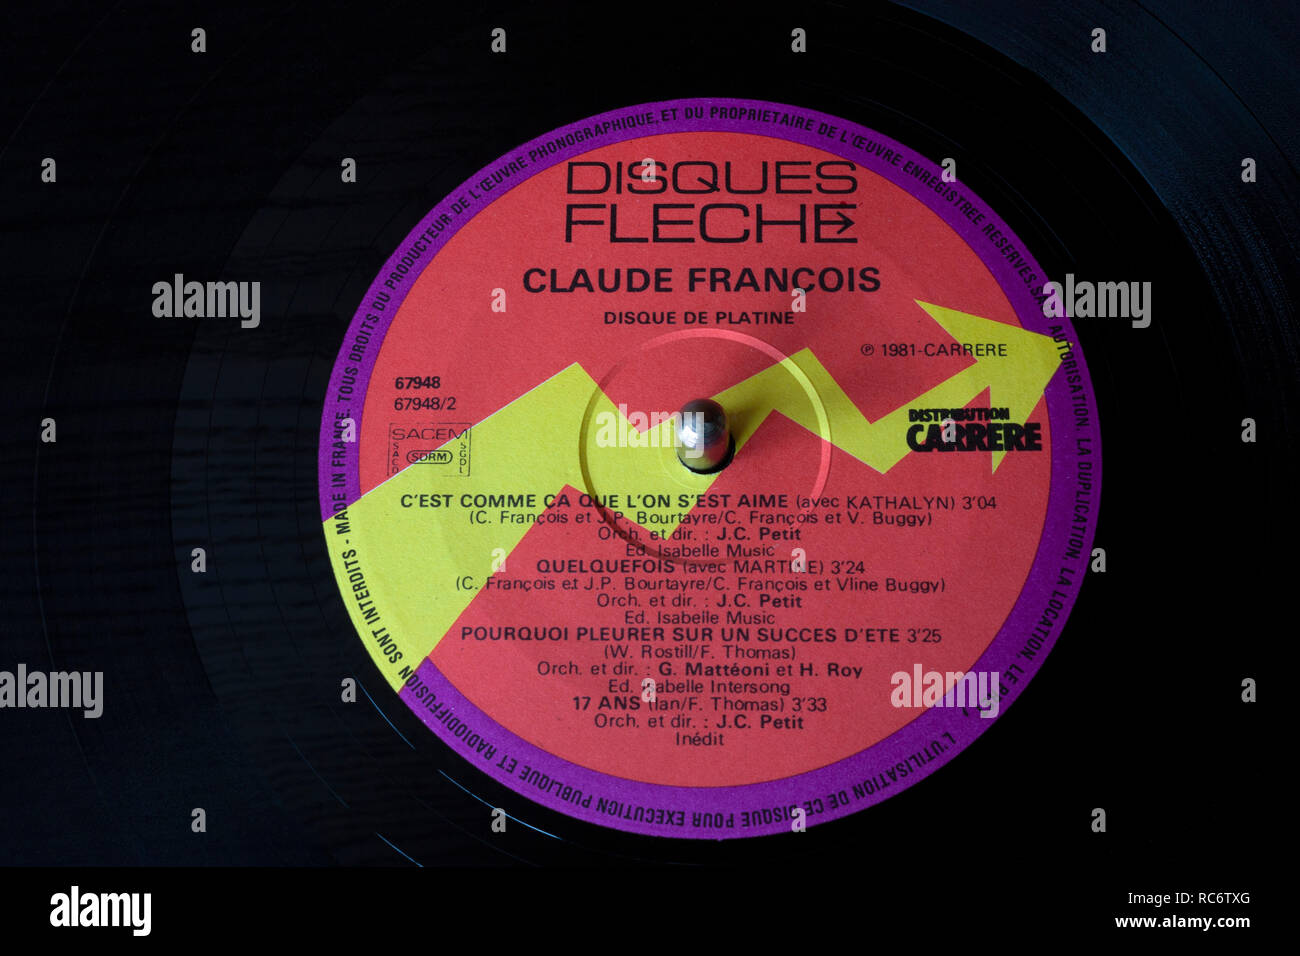 Claude Francois vinilos & label - Disque De Platine álbum recopilatorio (publicada en 1981). Foto de stock